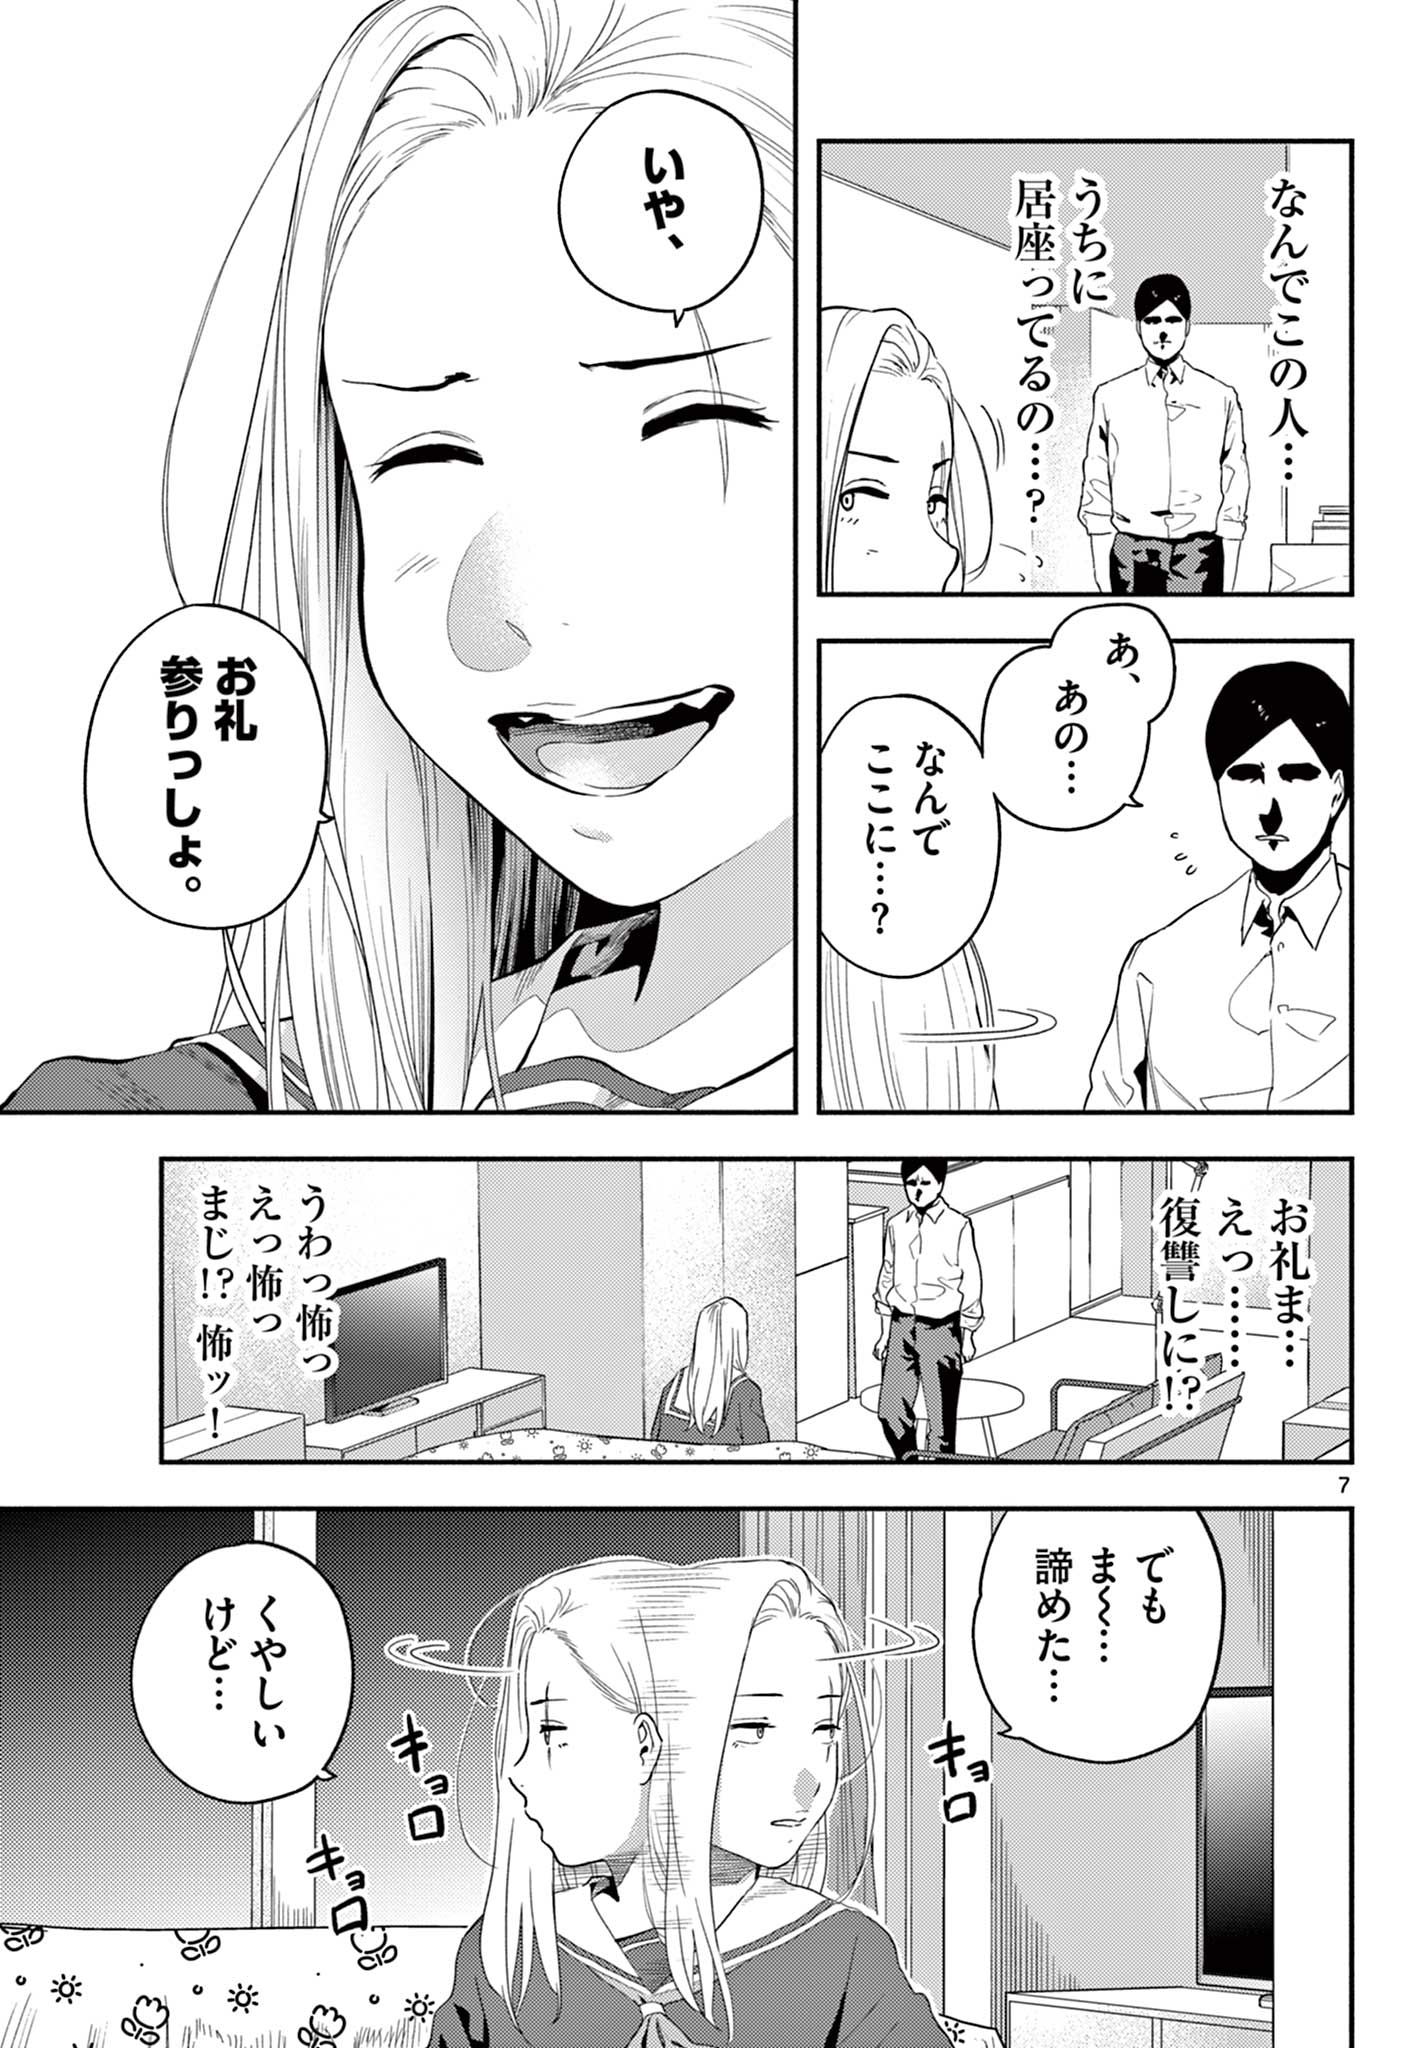 Killniru – Sensei ga Koroshiya tte Hontou desu ka? - Chapter 4 - Page 7